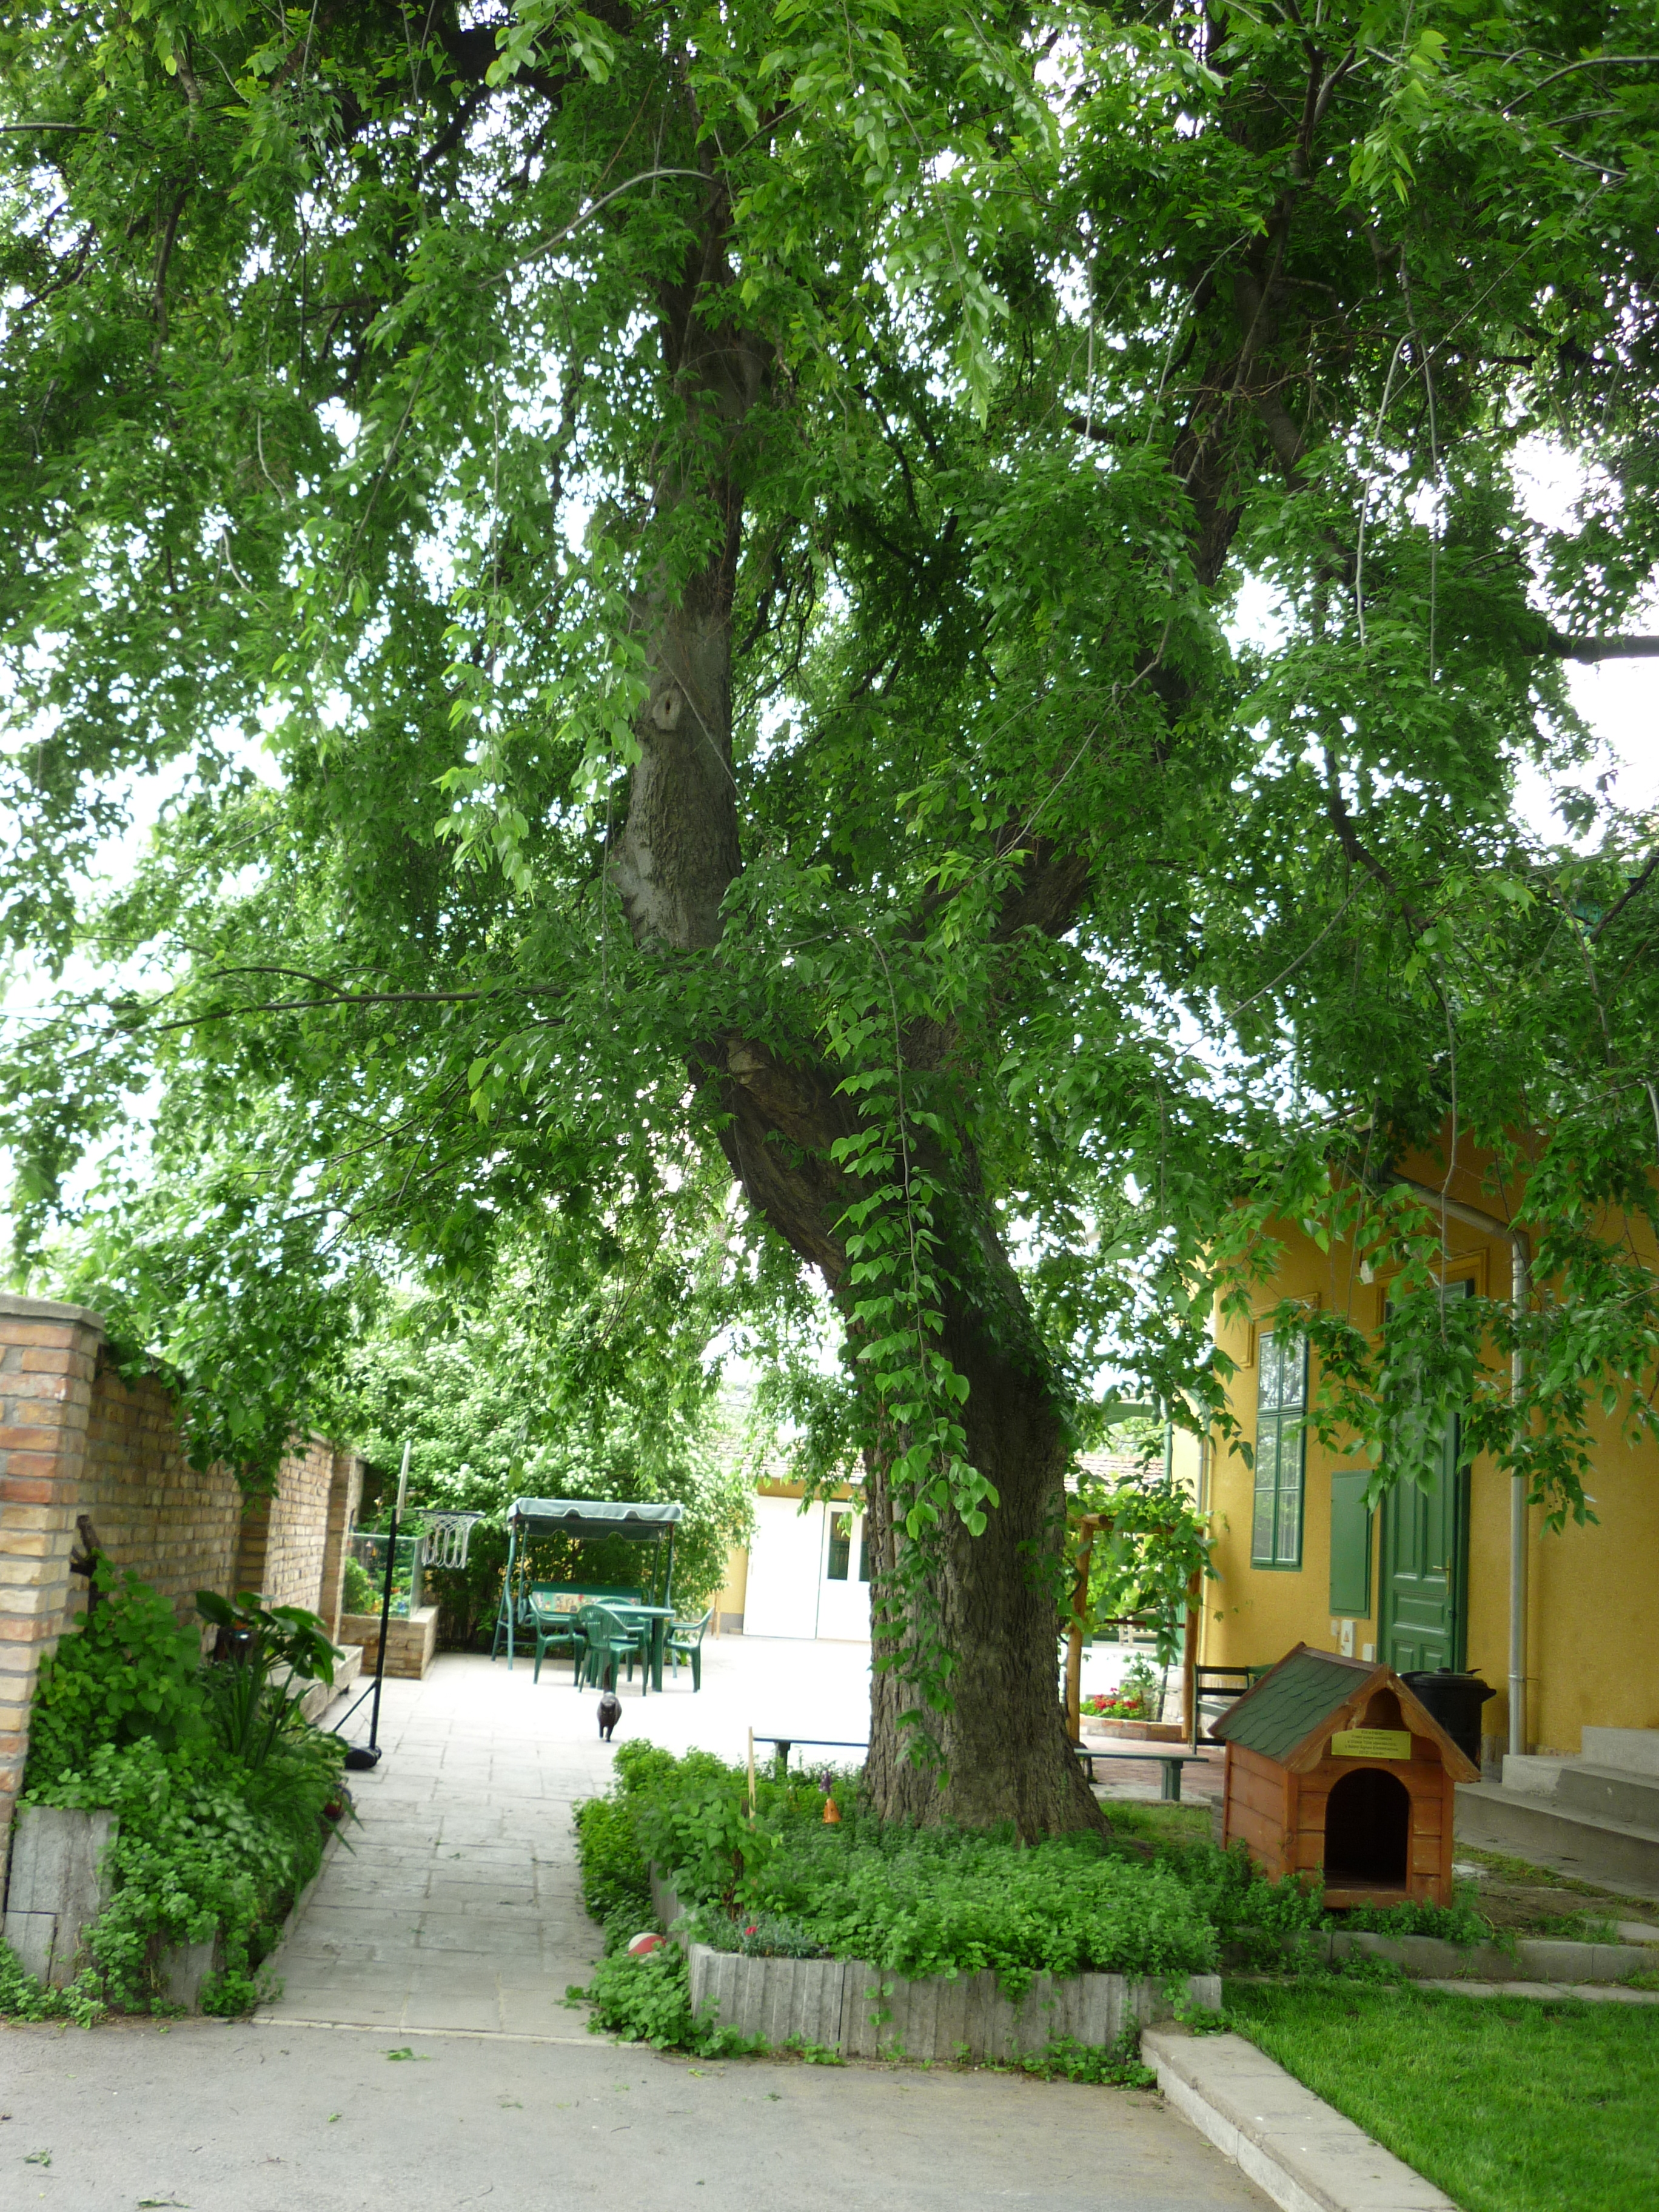 Ostrom a fa alatt – az ostorfa, amiről Frakk megpróbálta lehozni Szerénkét és Lukréciát